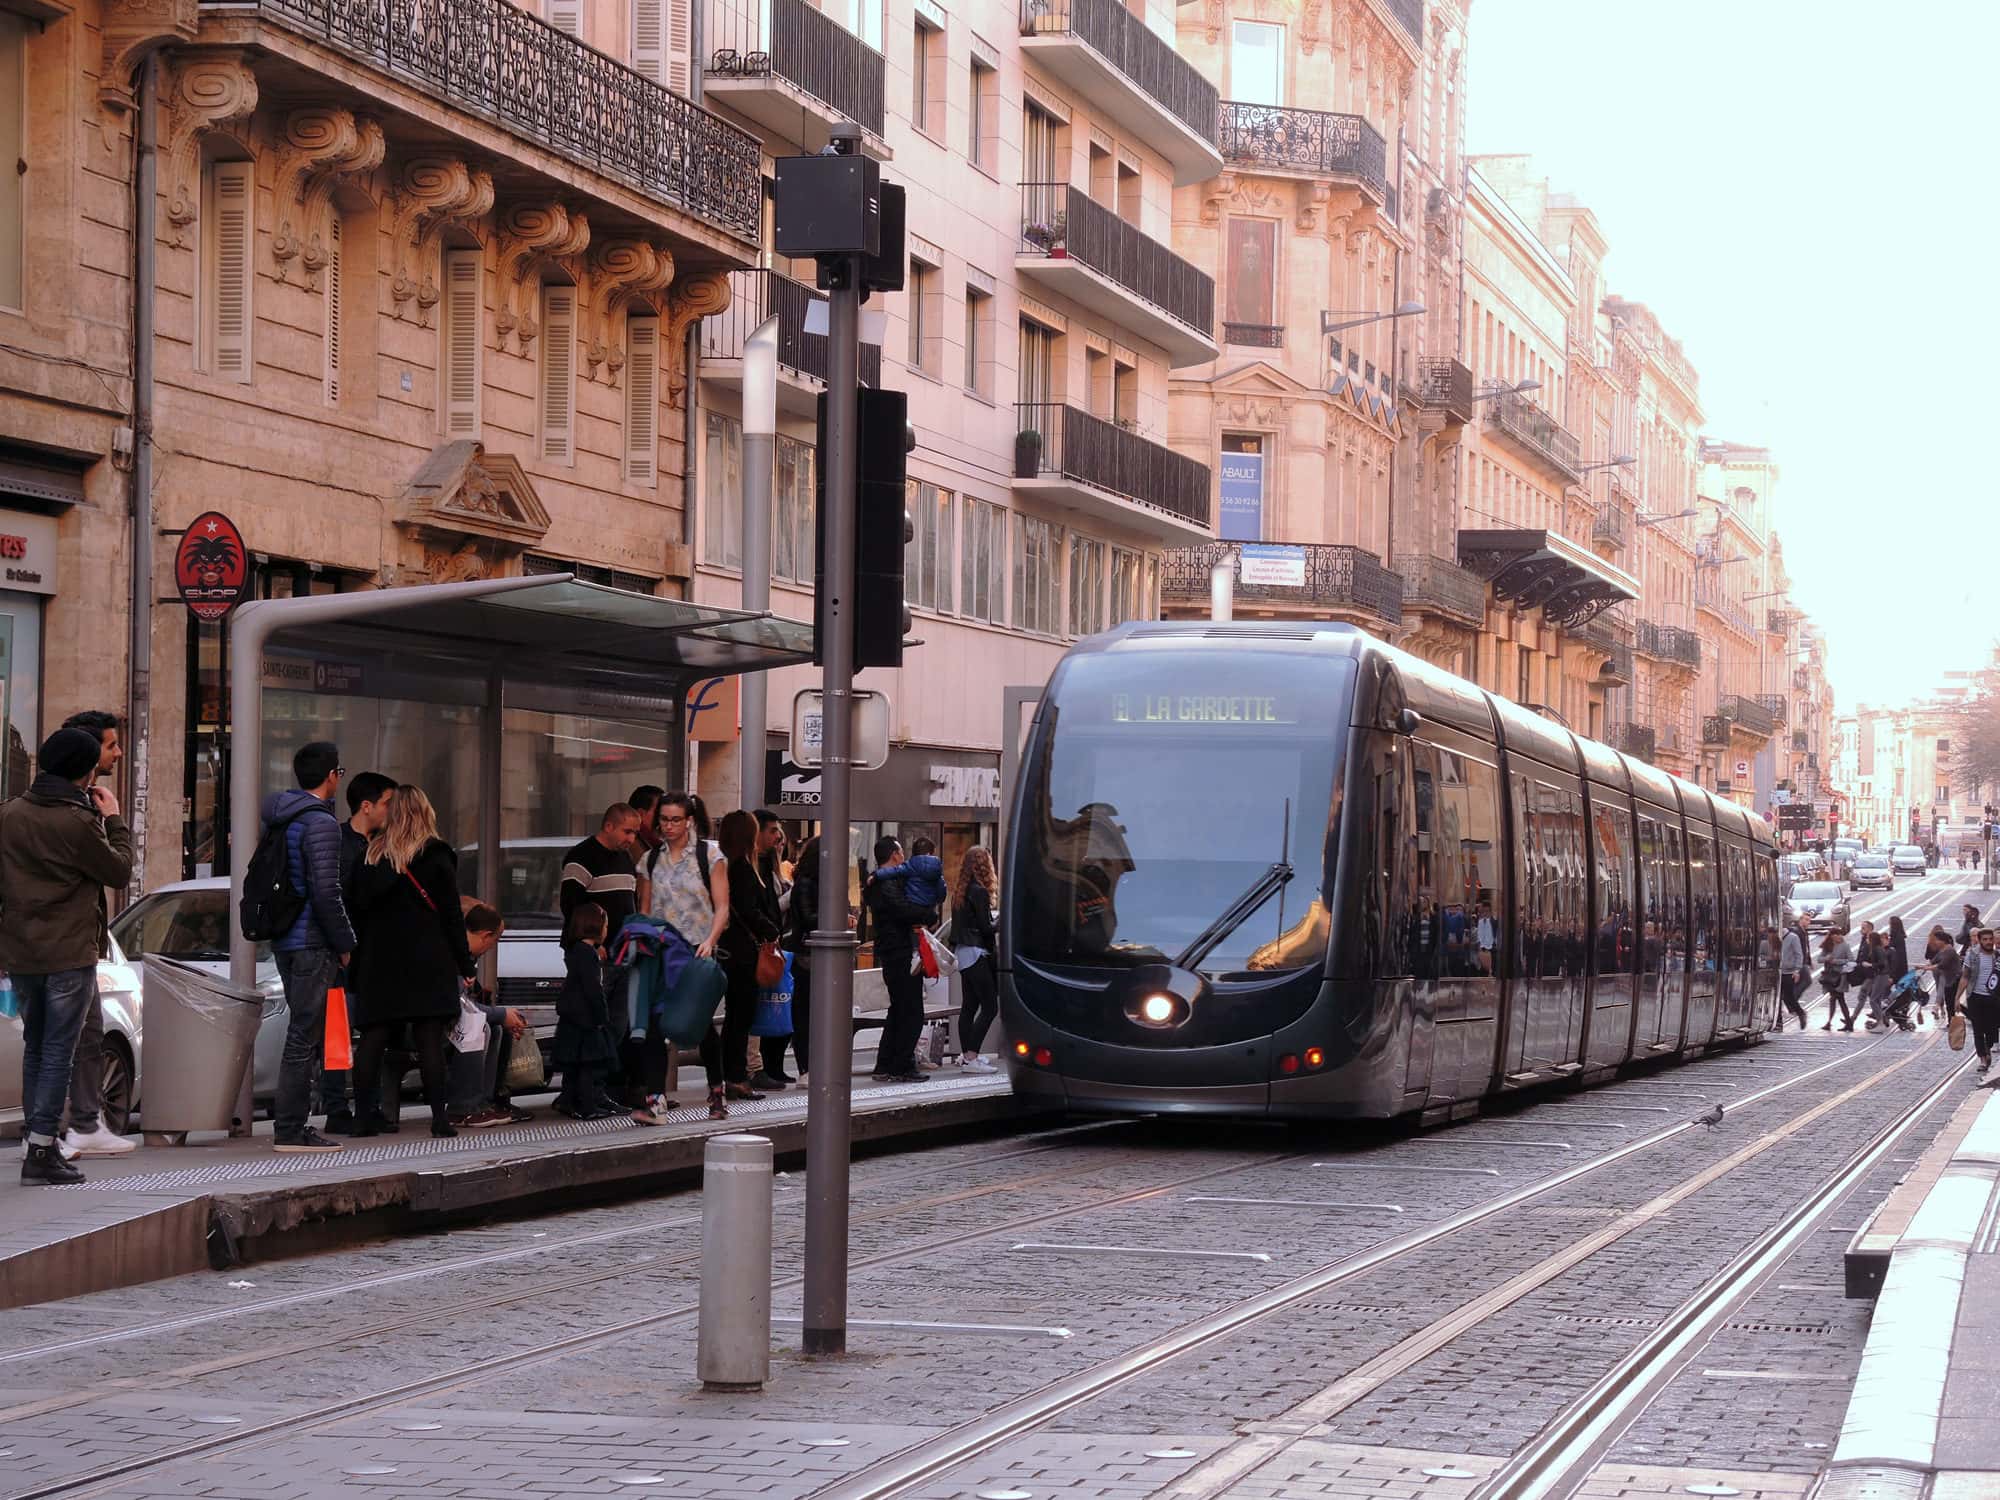 Transports : la gauche contre la hausse des tarifs, Juppé parle d’abandon du tram